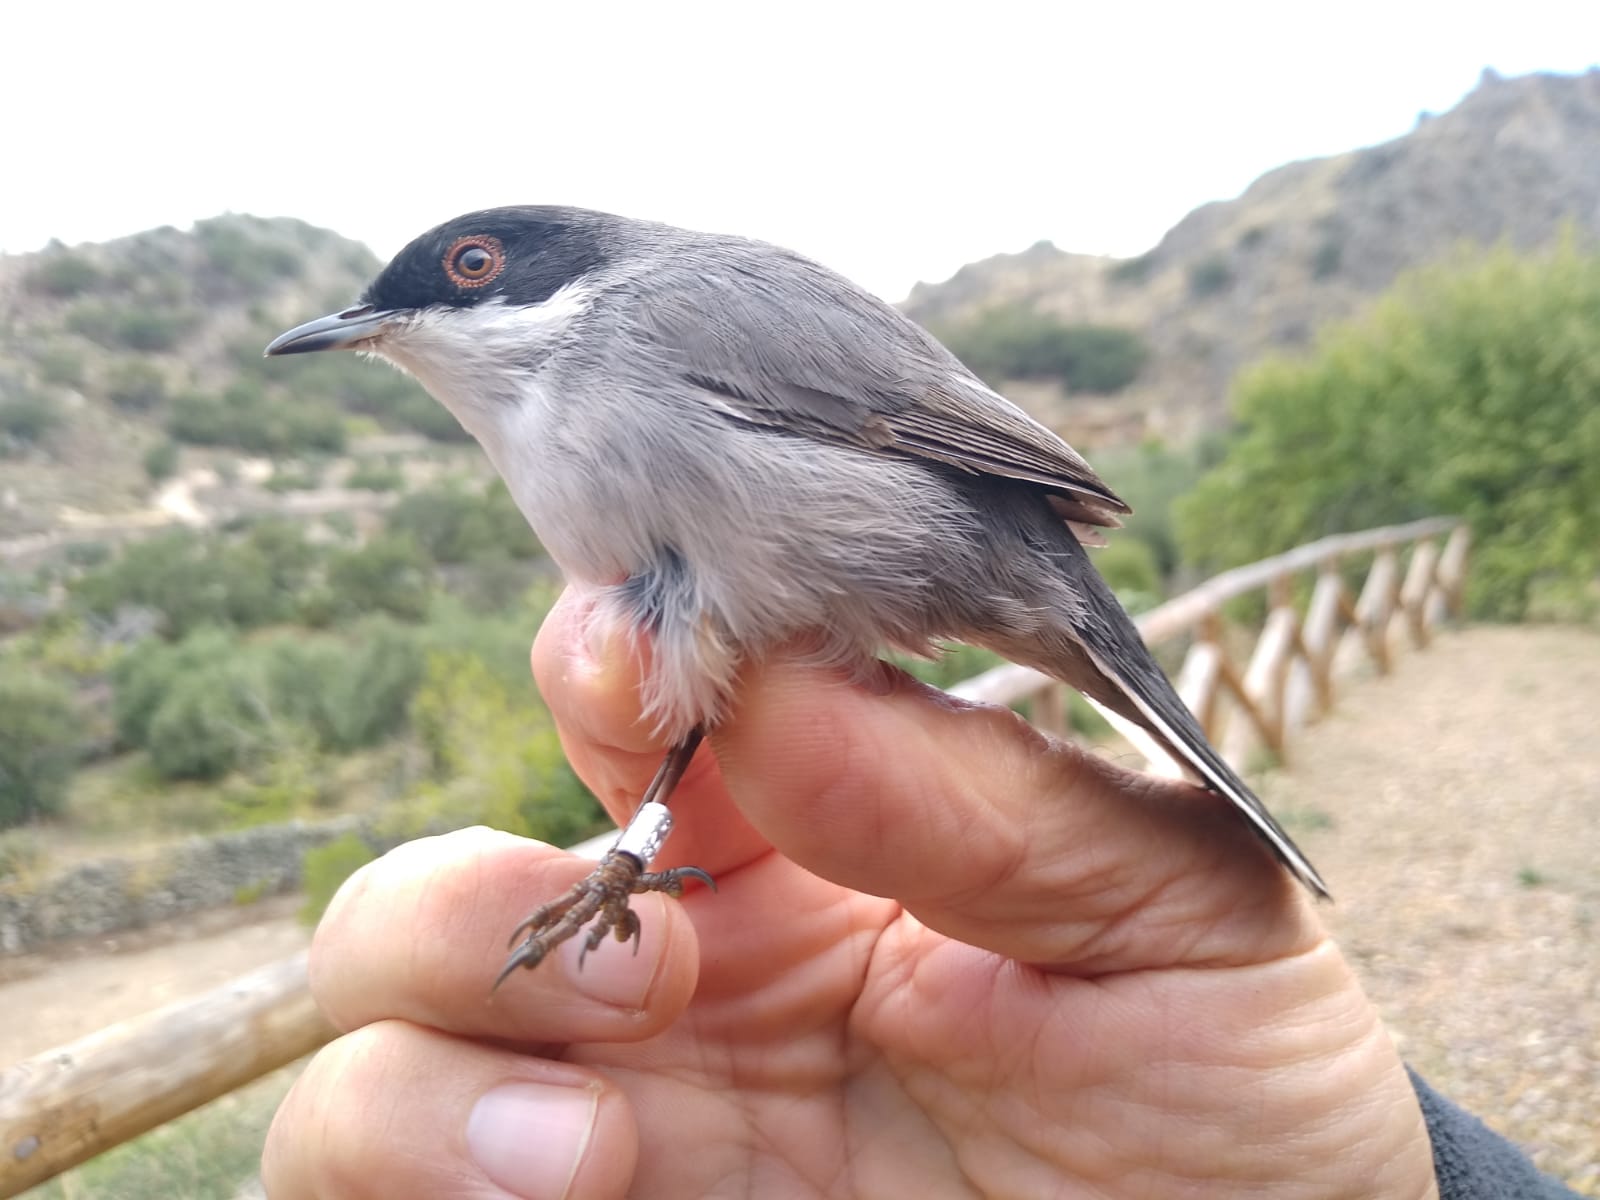 Adenex anilla 183 aves de 17 especies diferentes antes de su viaje migratorio